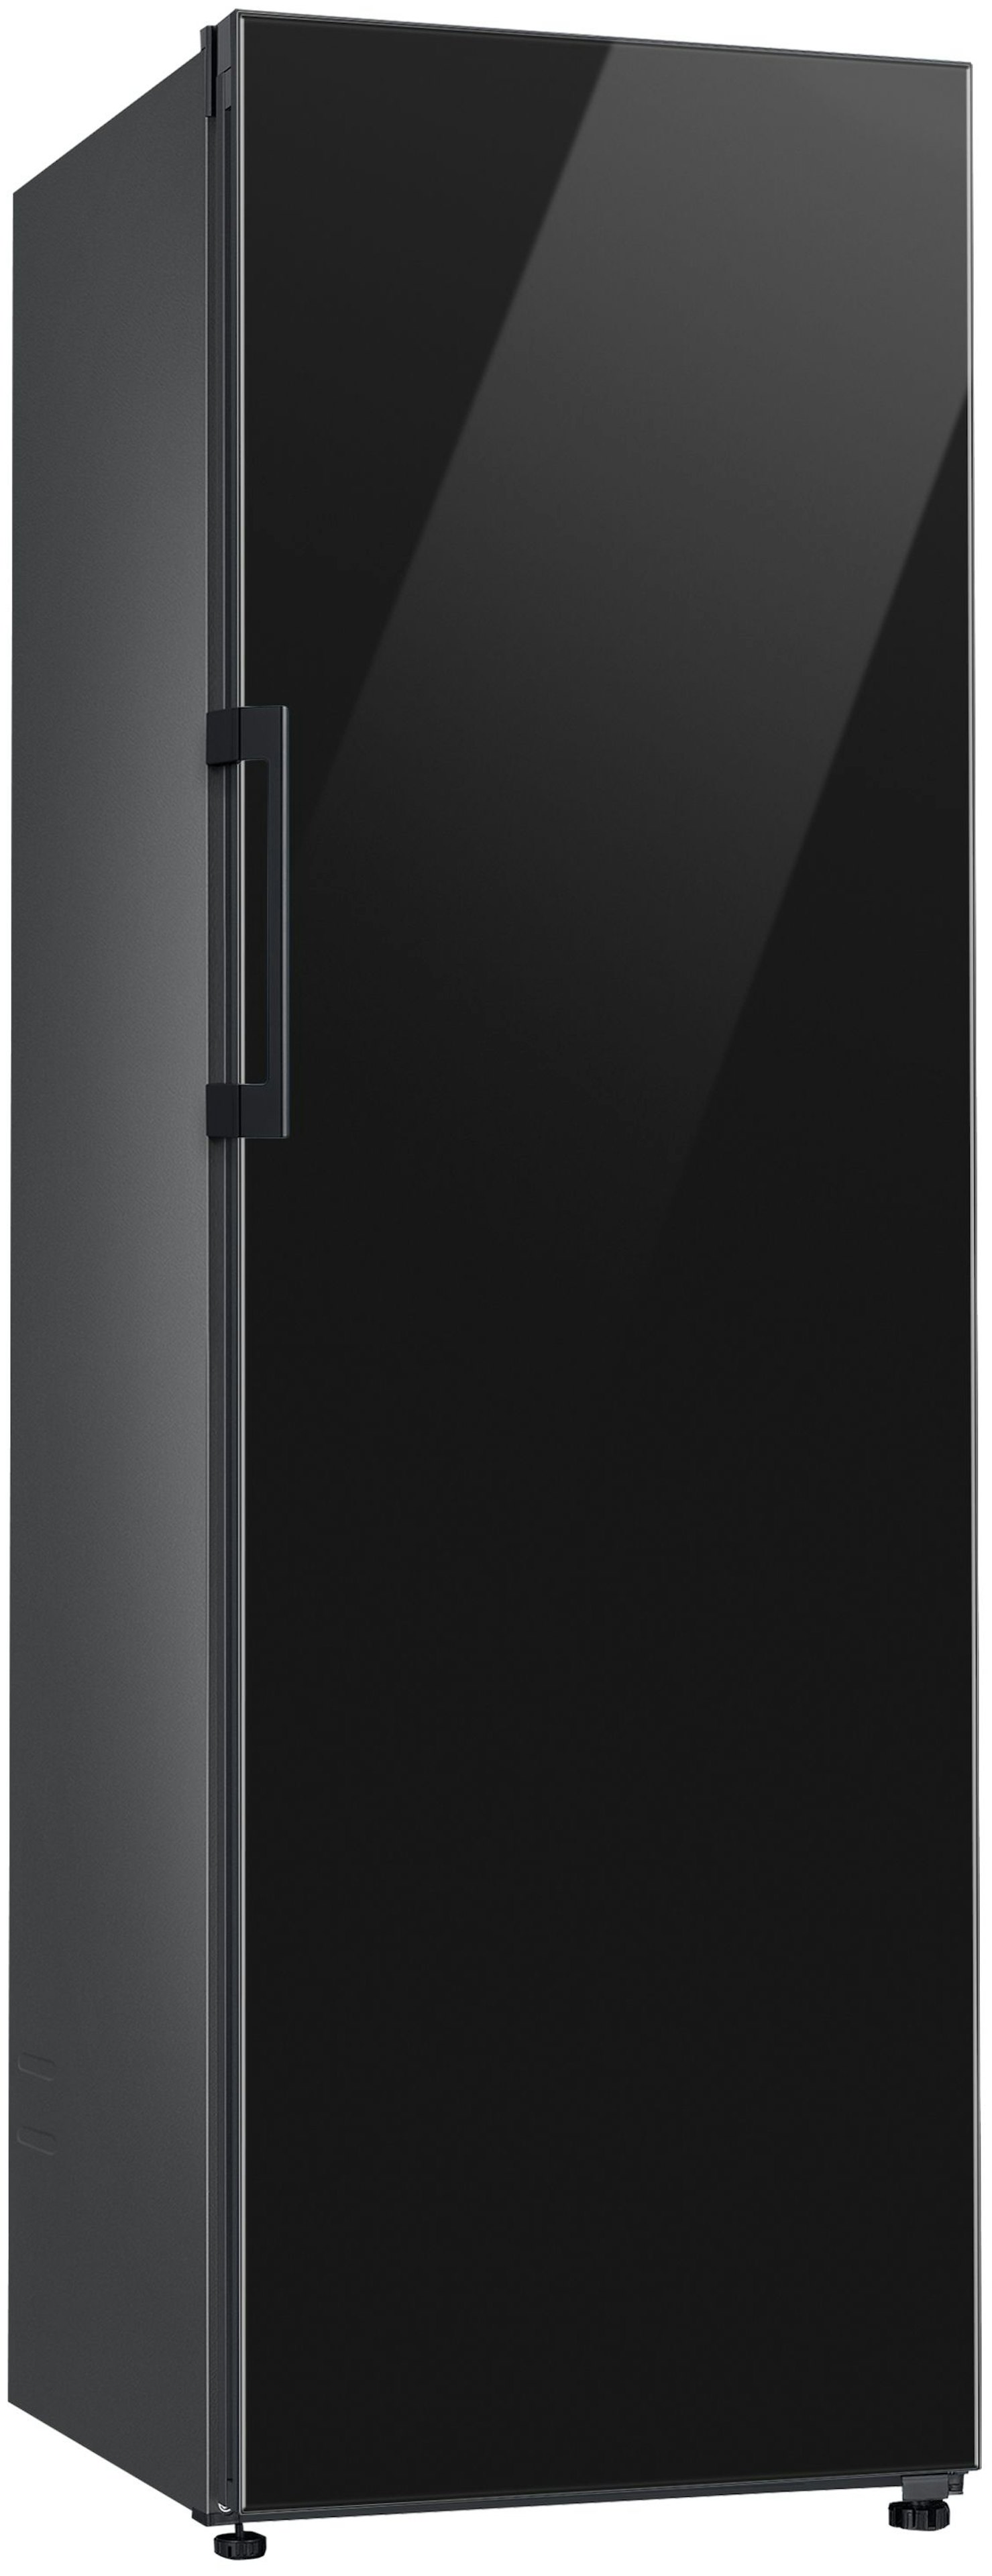 Samsung RR39C76C322/EF vrijstaand koelkast afbeelding 5